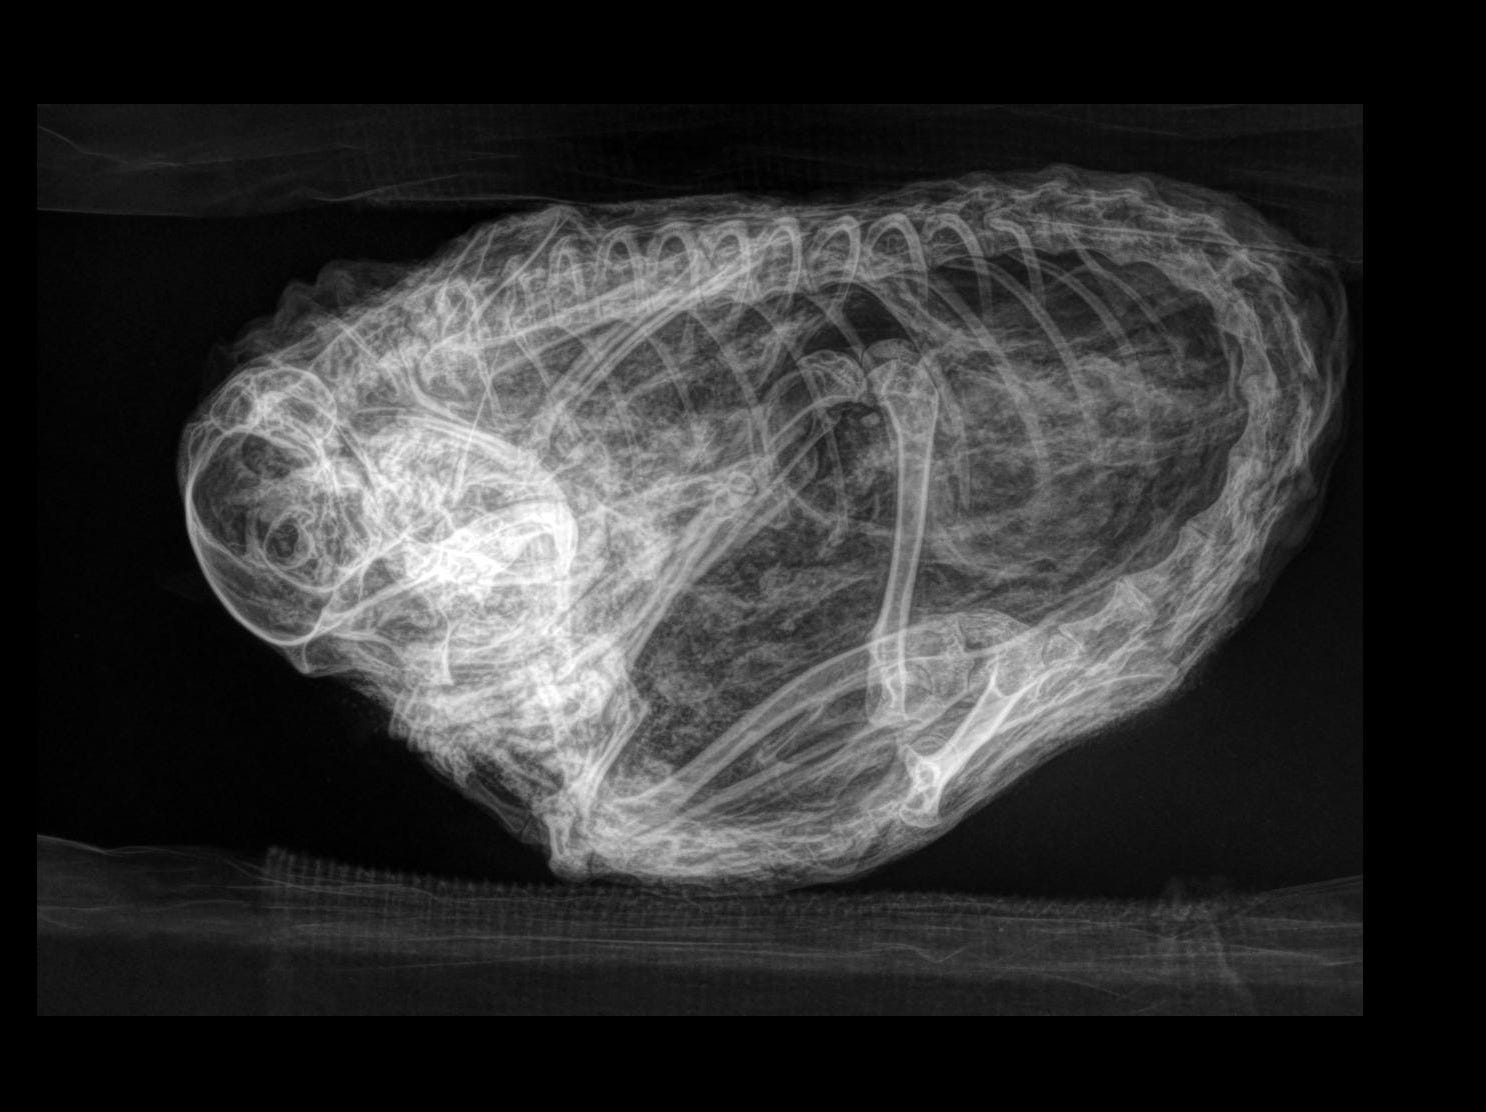 Eine Röntgenaufnahme eines zusammengeballten Eichhörnchenskeletts, das eine lange, abgerundete Wirbelsäule zeigt.